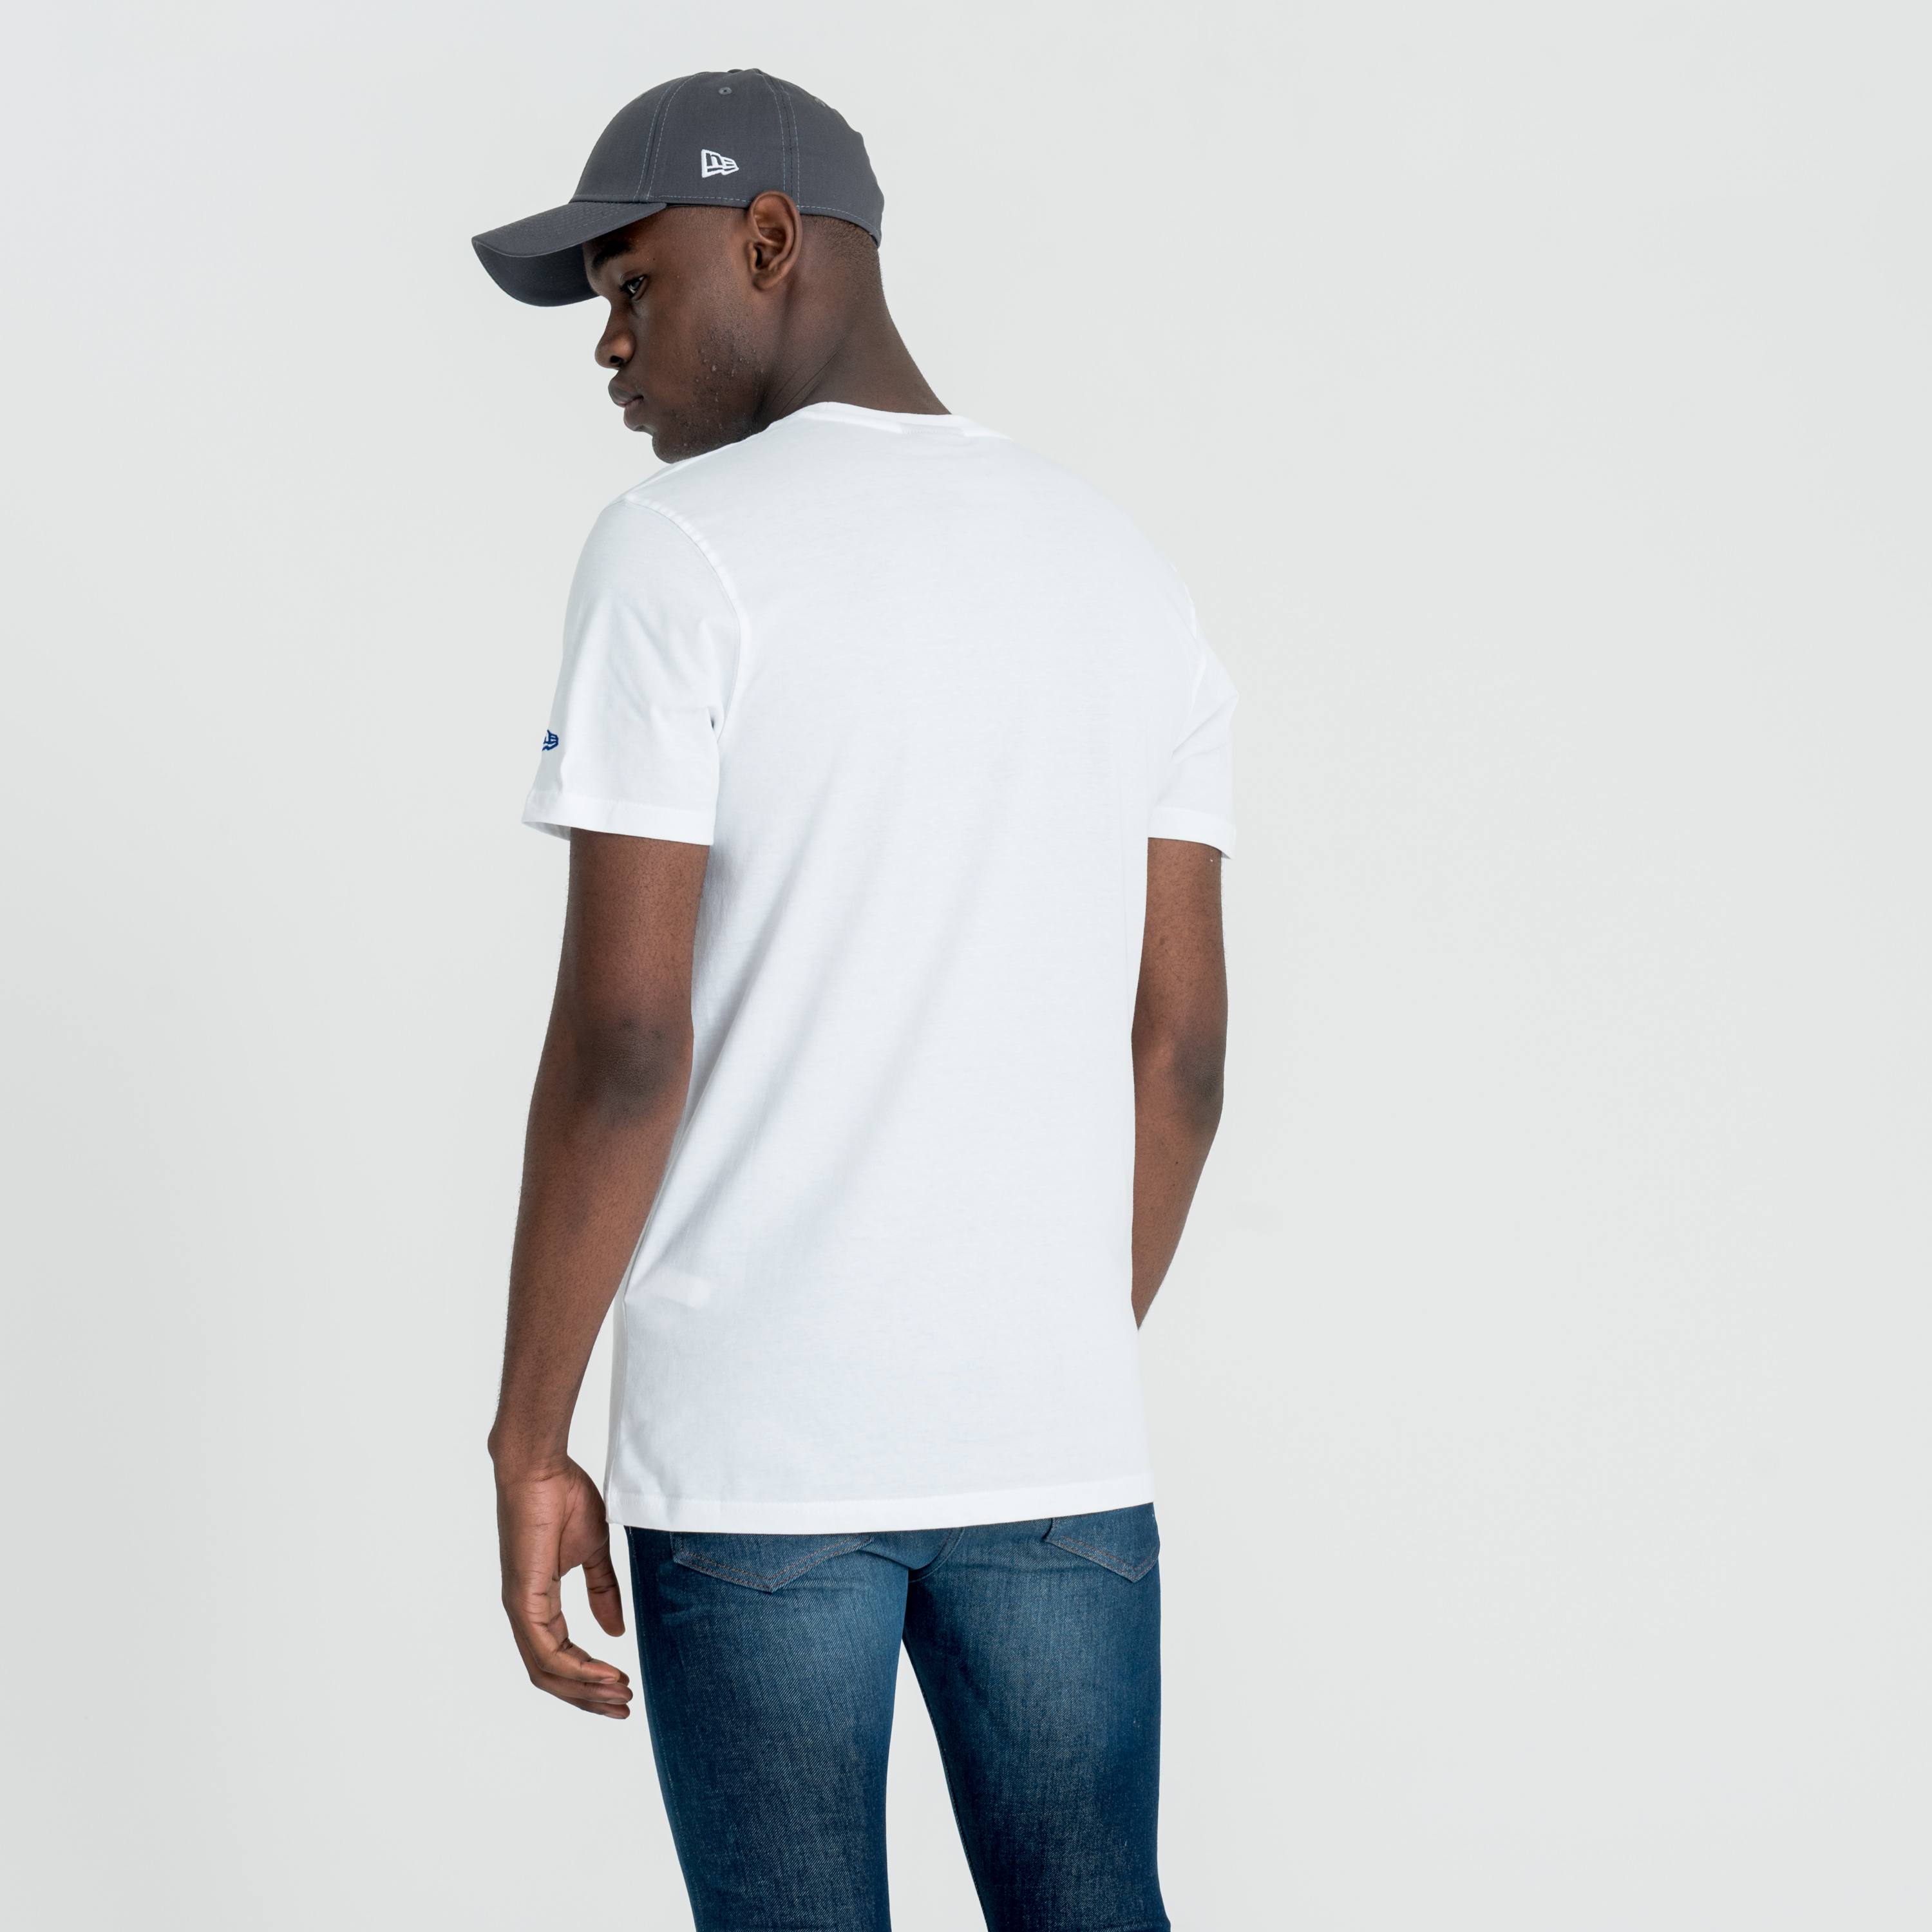 New York Giants NFL Team Logo White T-Shirt